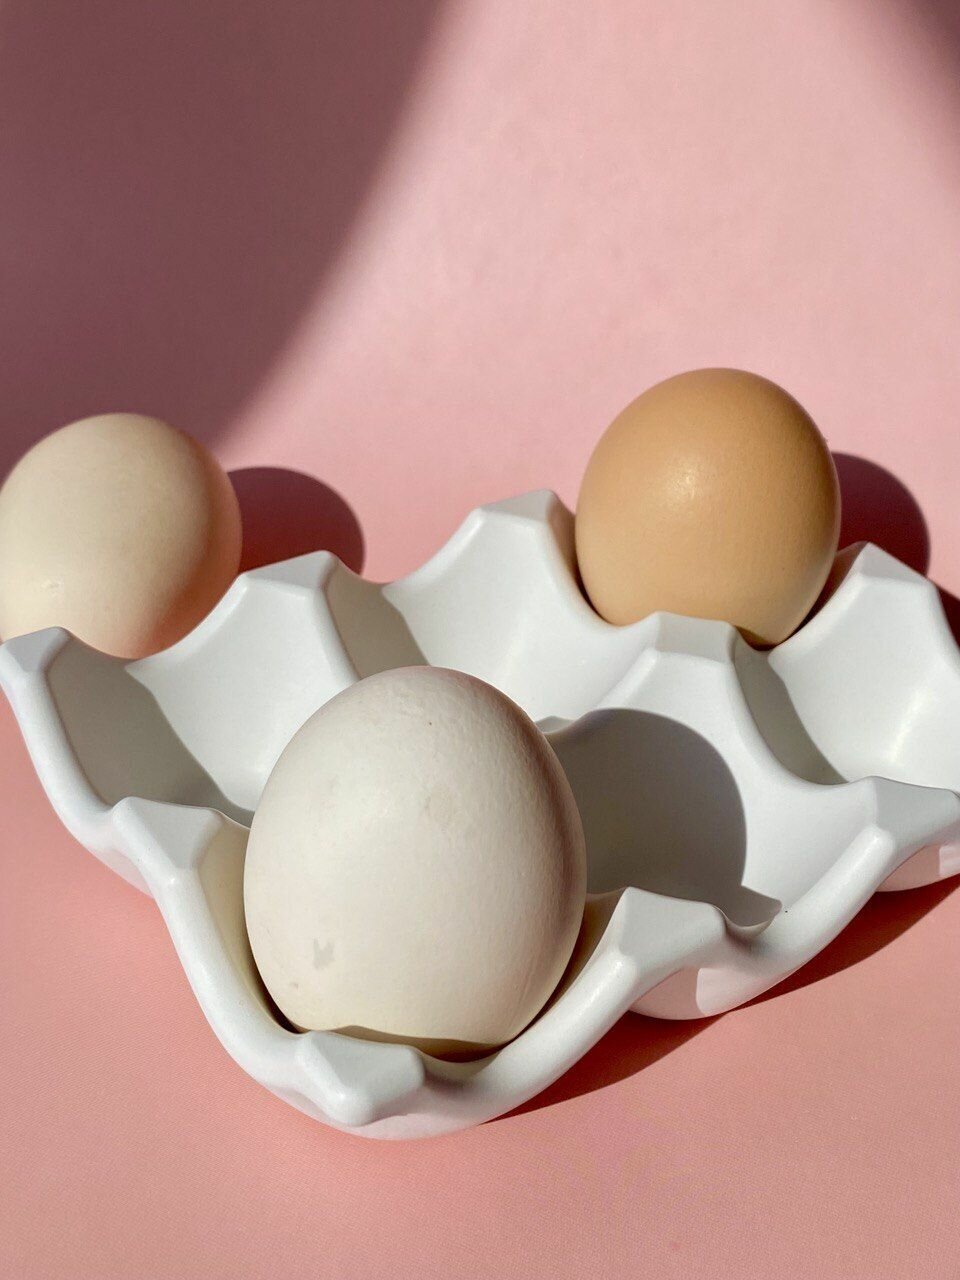 Подставка для яиц. Сервировка стола, организация хранения. Пасха